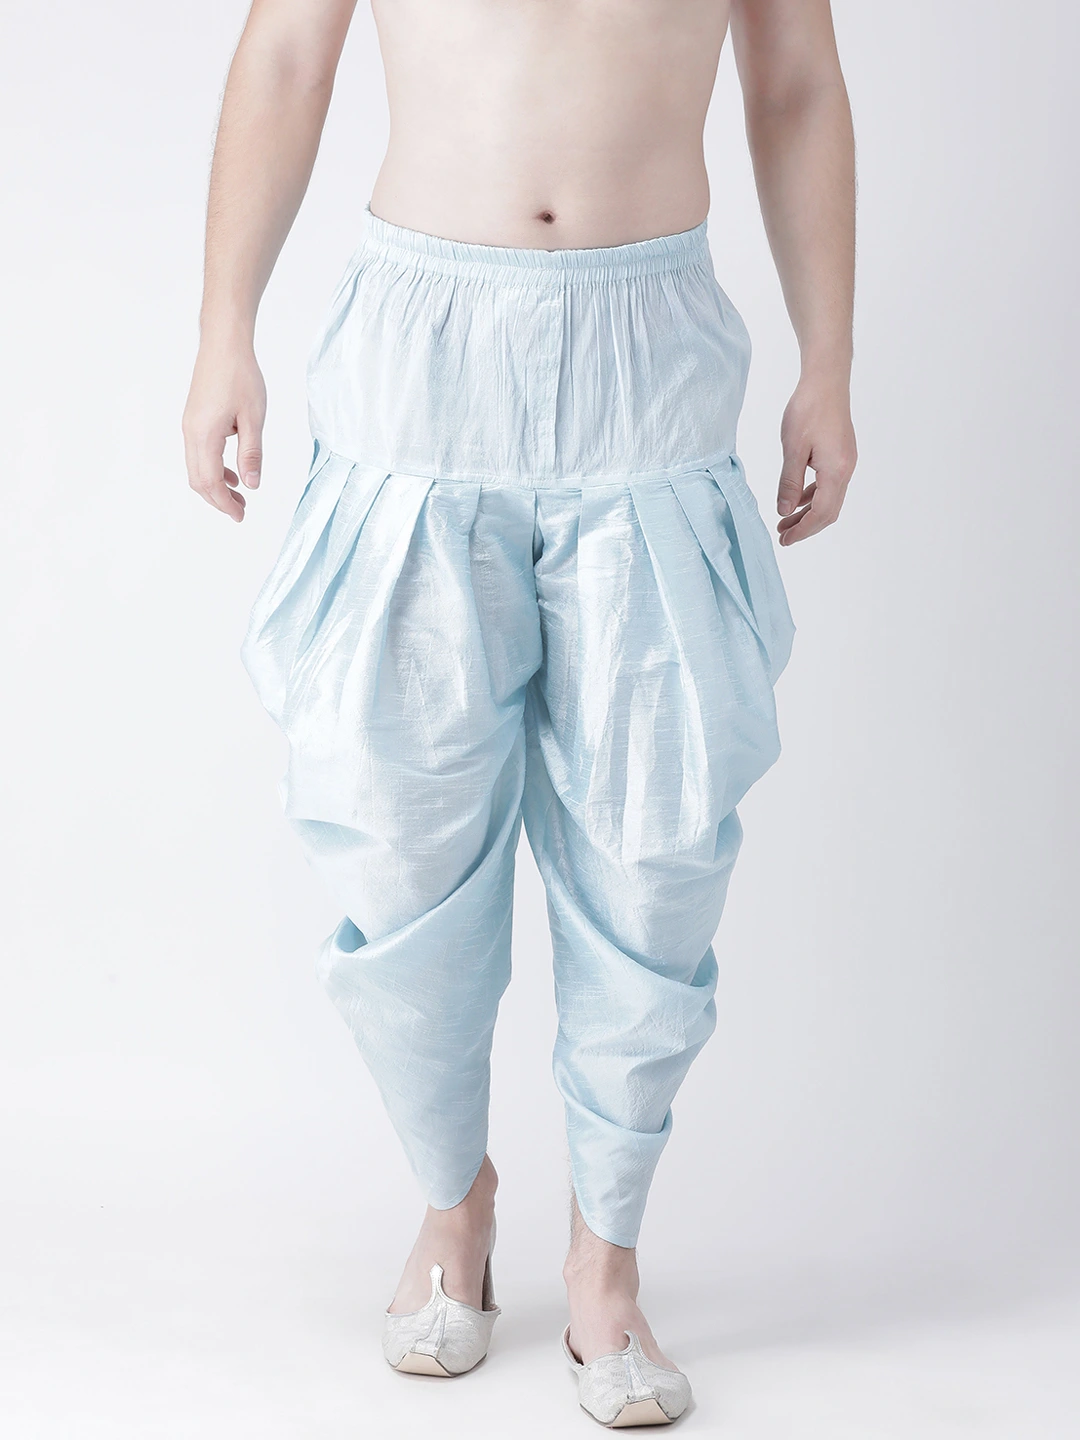 Readymade Red PATIALA/ Patiyala SALWAR Indian Punjab Cotton Pants | eBay